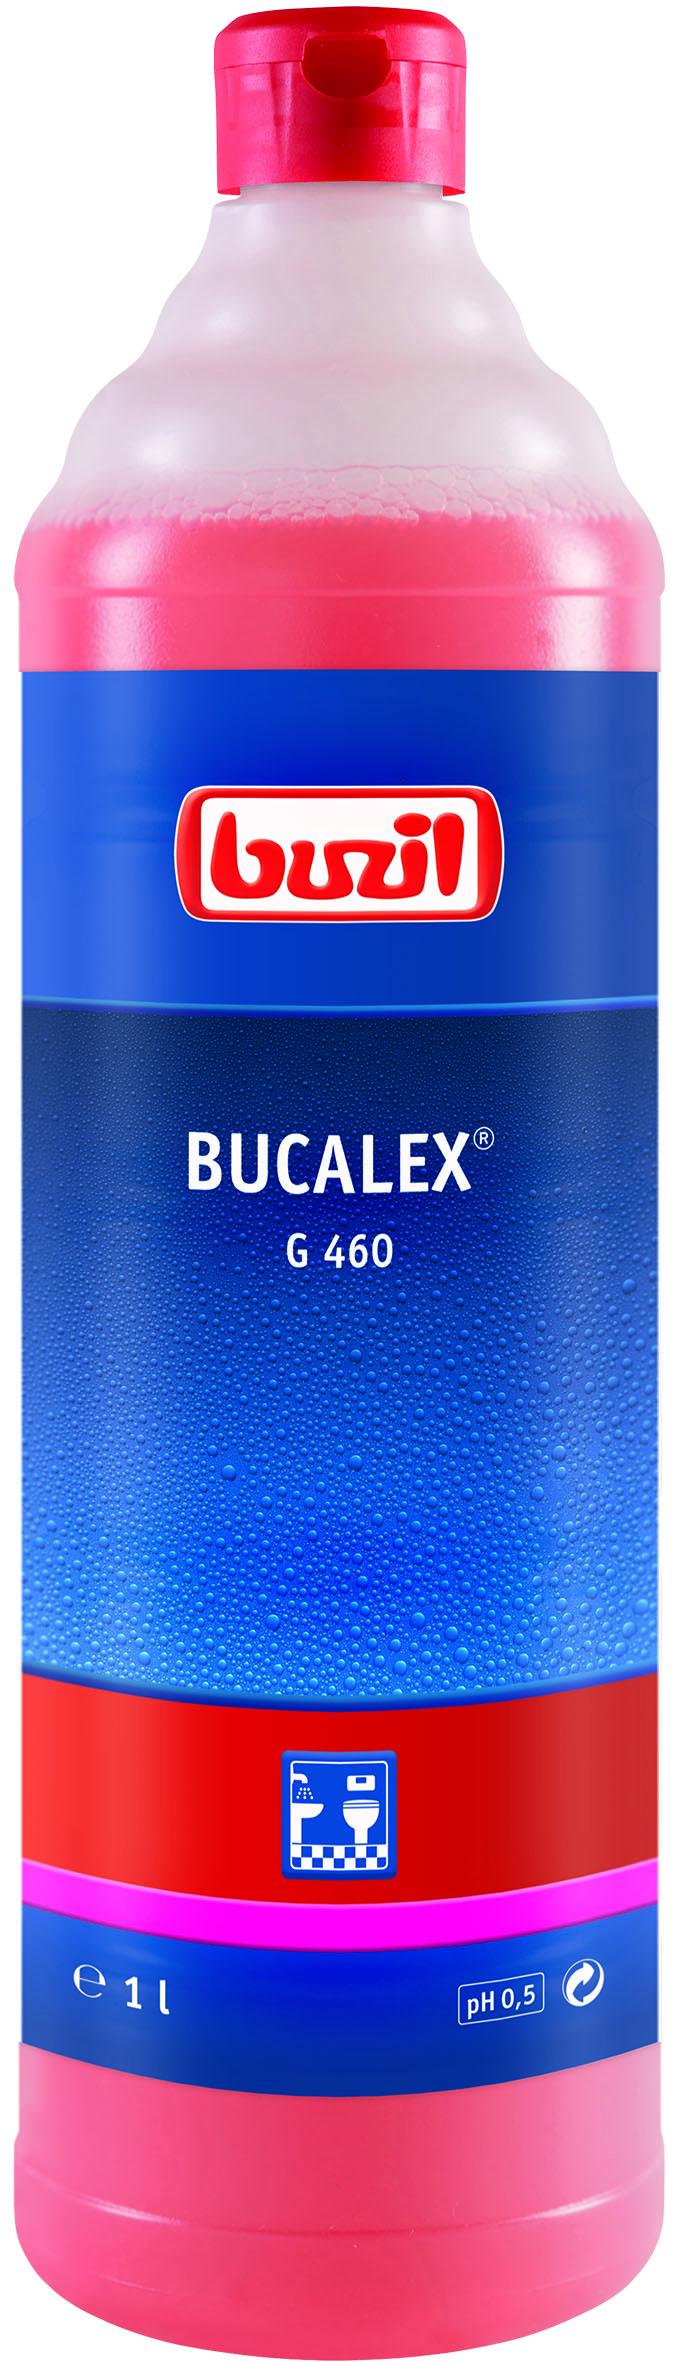 Засіб для чищення сантехніки / басейнів Buzil Bucalex G460 1 л (333982)